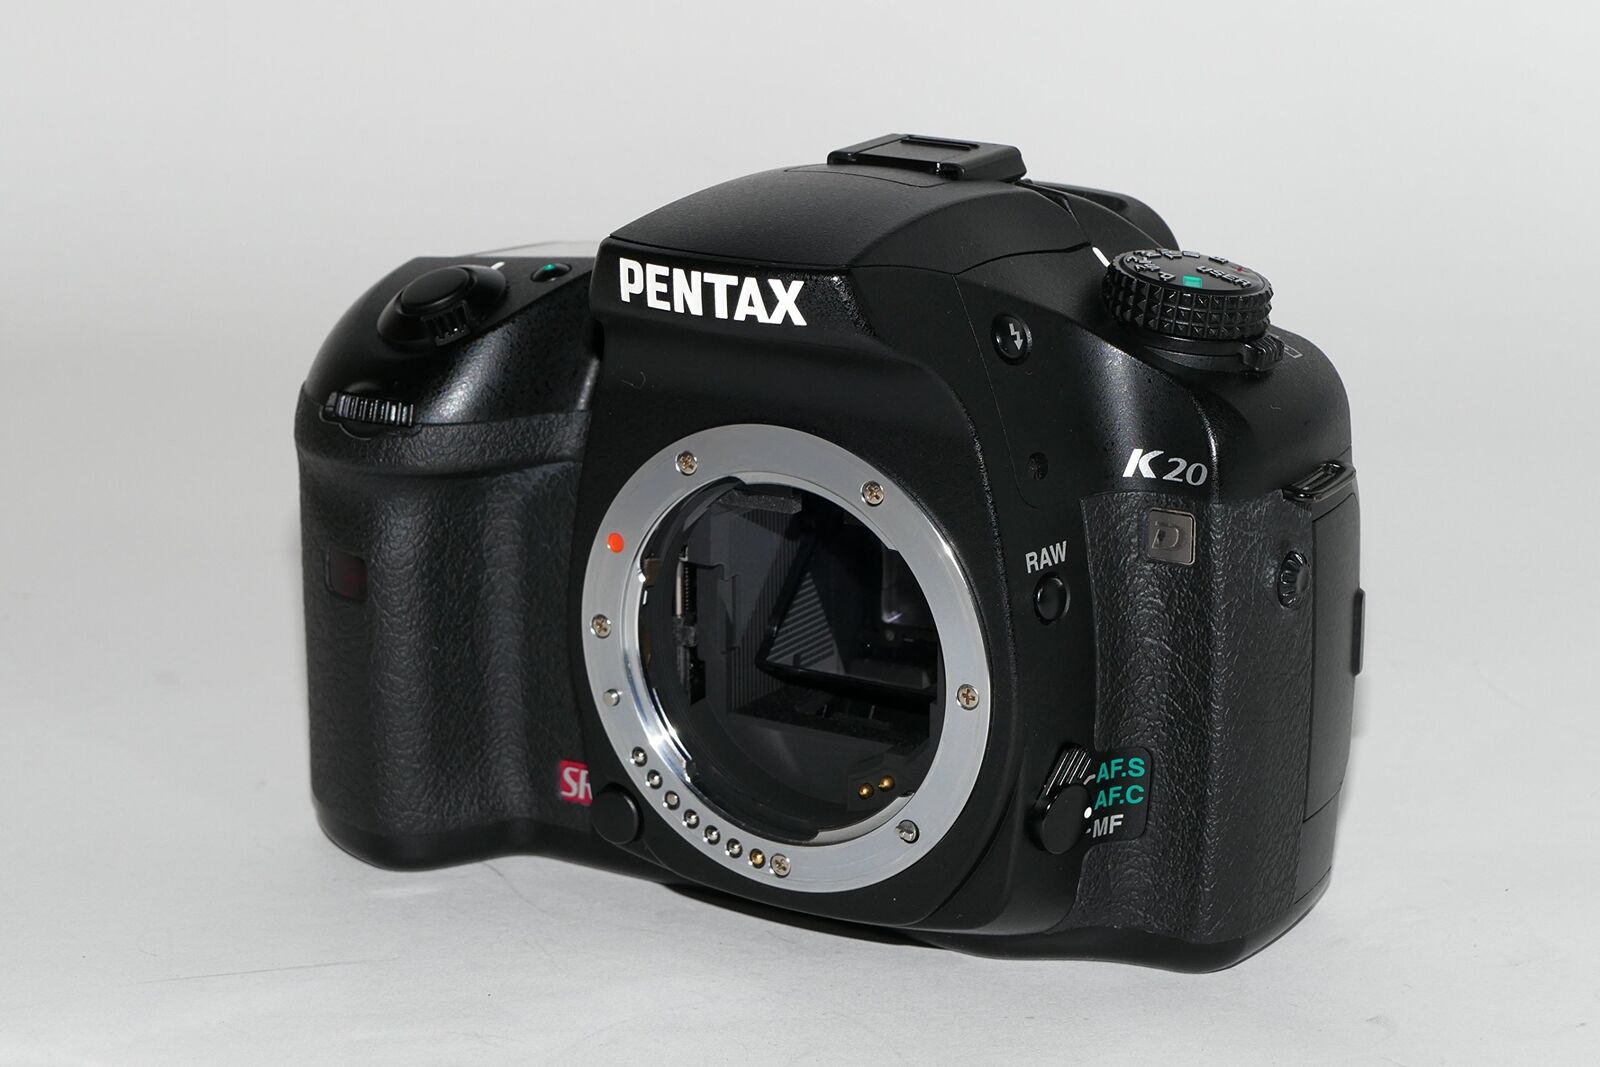 PENTAX digital SLR camera K20D body